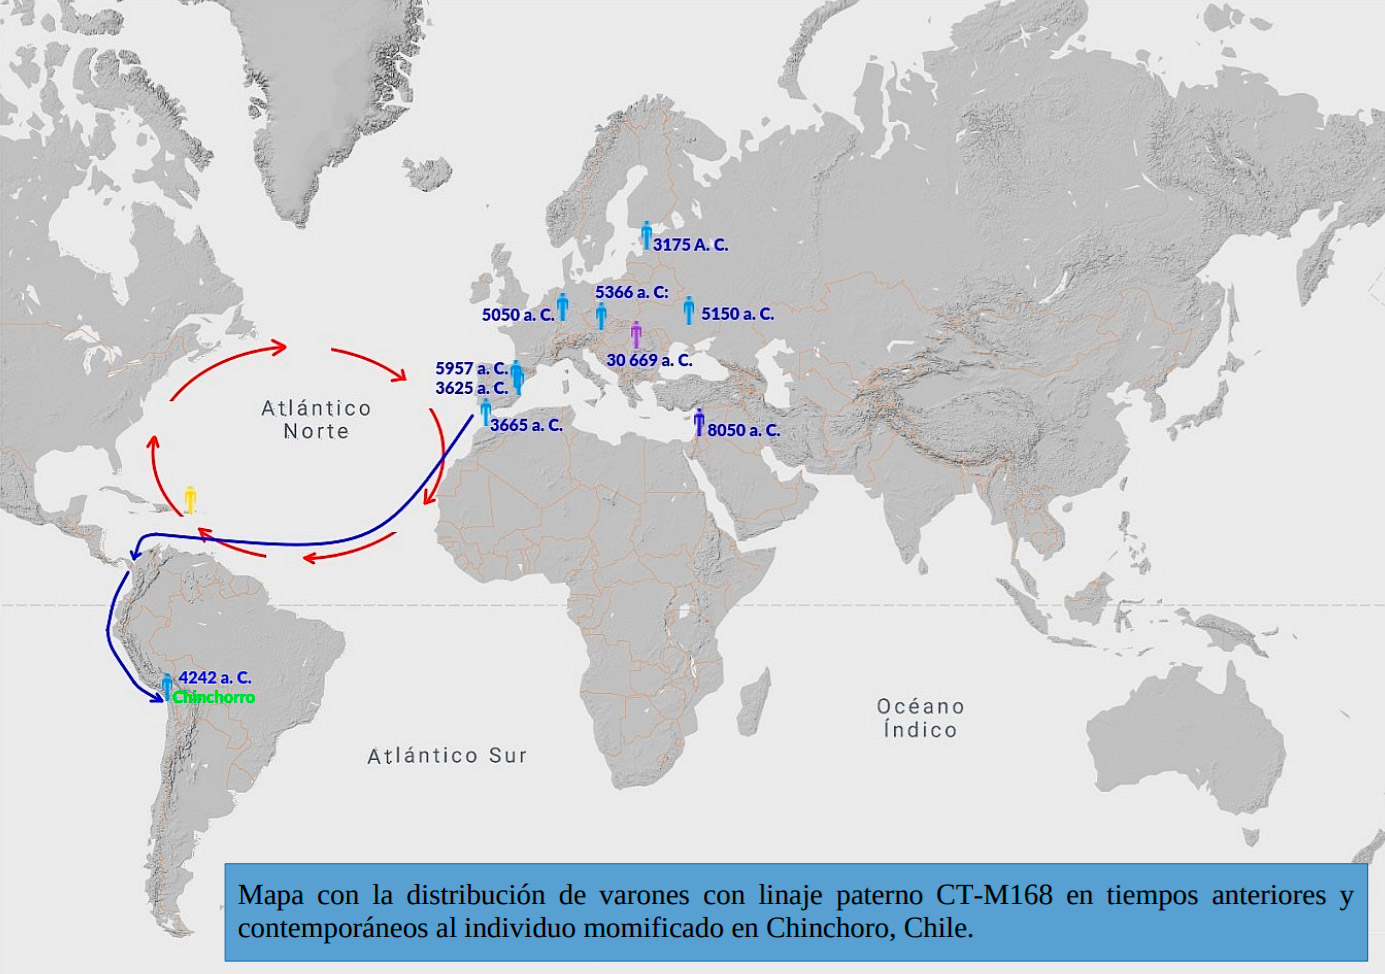 Mapa 1. Las flechas rojas señalan el sentido circular de las las principales ‘Corrientes del Golfo’, las cuales permiten el arribo a las costas noroccidentales de América del Sur. Las flechas azules señalan la ruta más verosímil seguida por el linaje paterno CT-M168 de Chinchorro, Chile. De acuerdo a las dataciones de CT-M168 de Iberia y a las mismas ‘Corrientes de Golfo’, el mejor punto de partida parece haber estado entre el SurSudoeste de Iberia. Una ruta desde las costas del Mar del Norte, aunque igualmente probable, no parece la mejor hipótesis. - Fuente: Georgeos Díaz-Montexano / atlantidahistorica.com